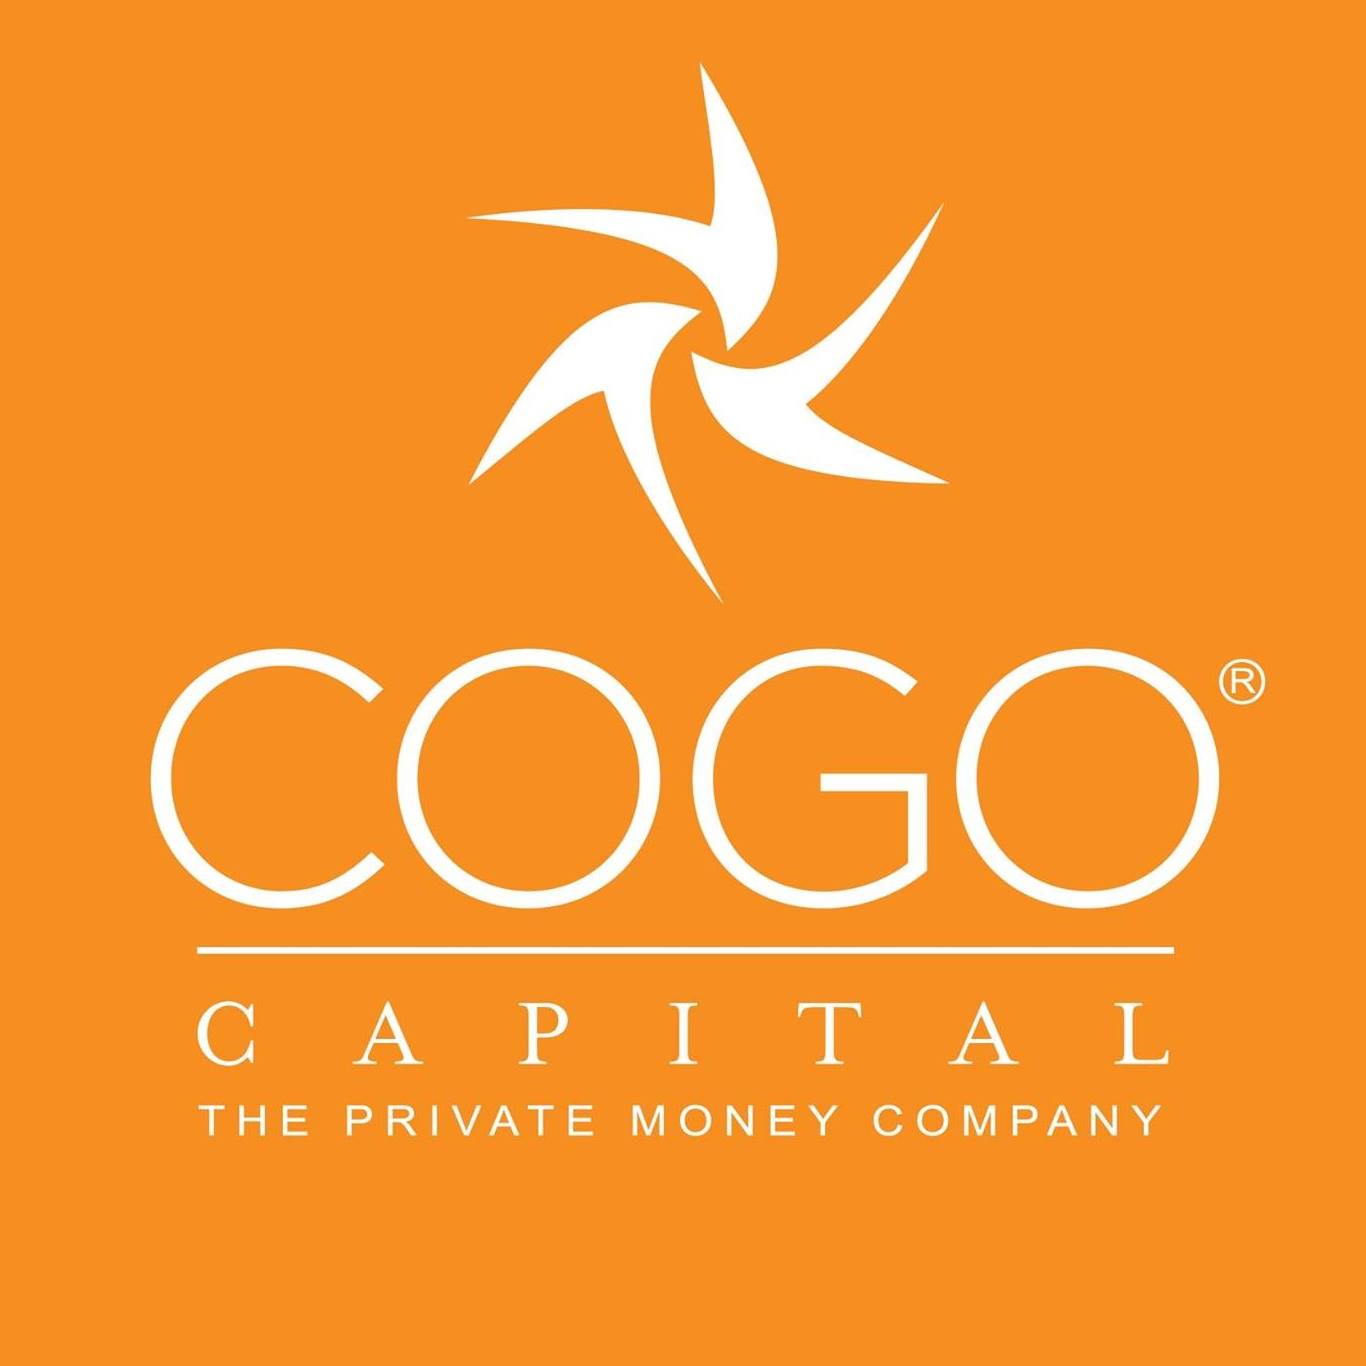 Company logo of Cogo Capital — The Private Money Company